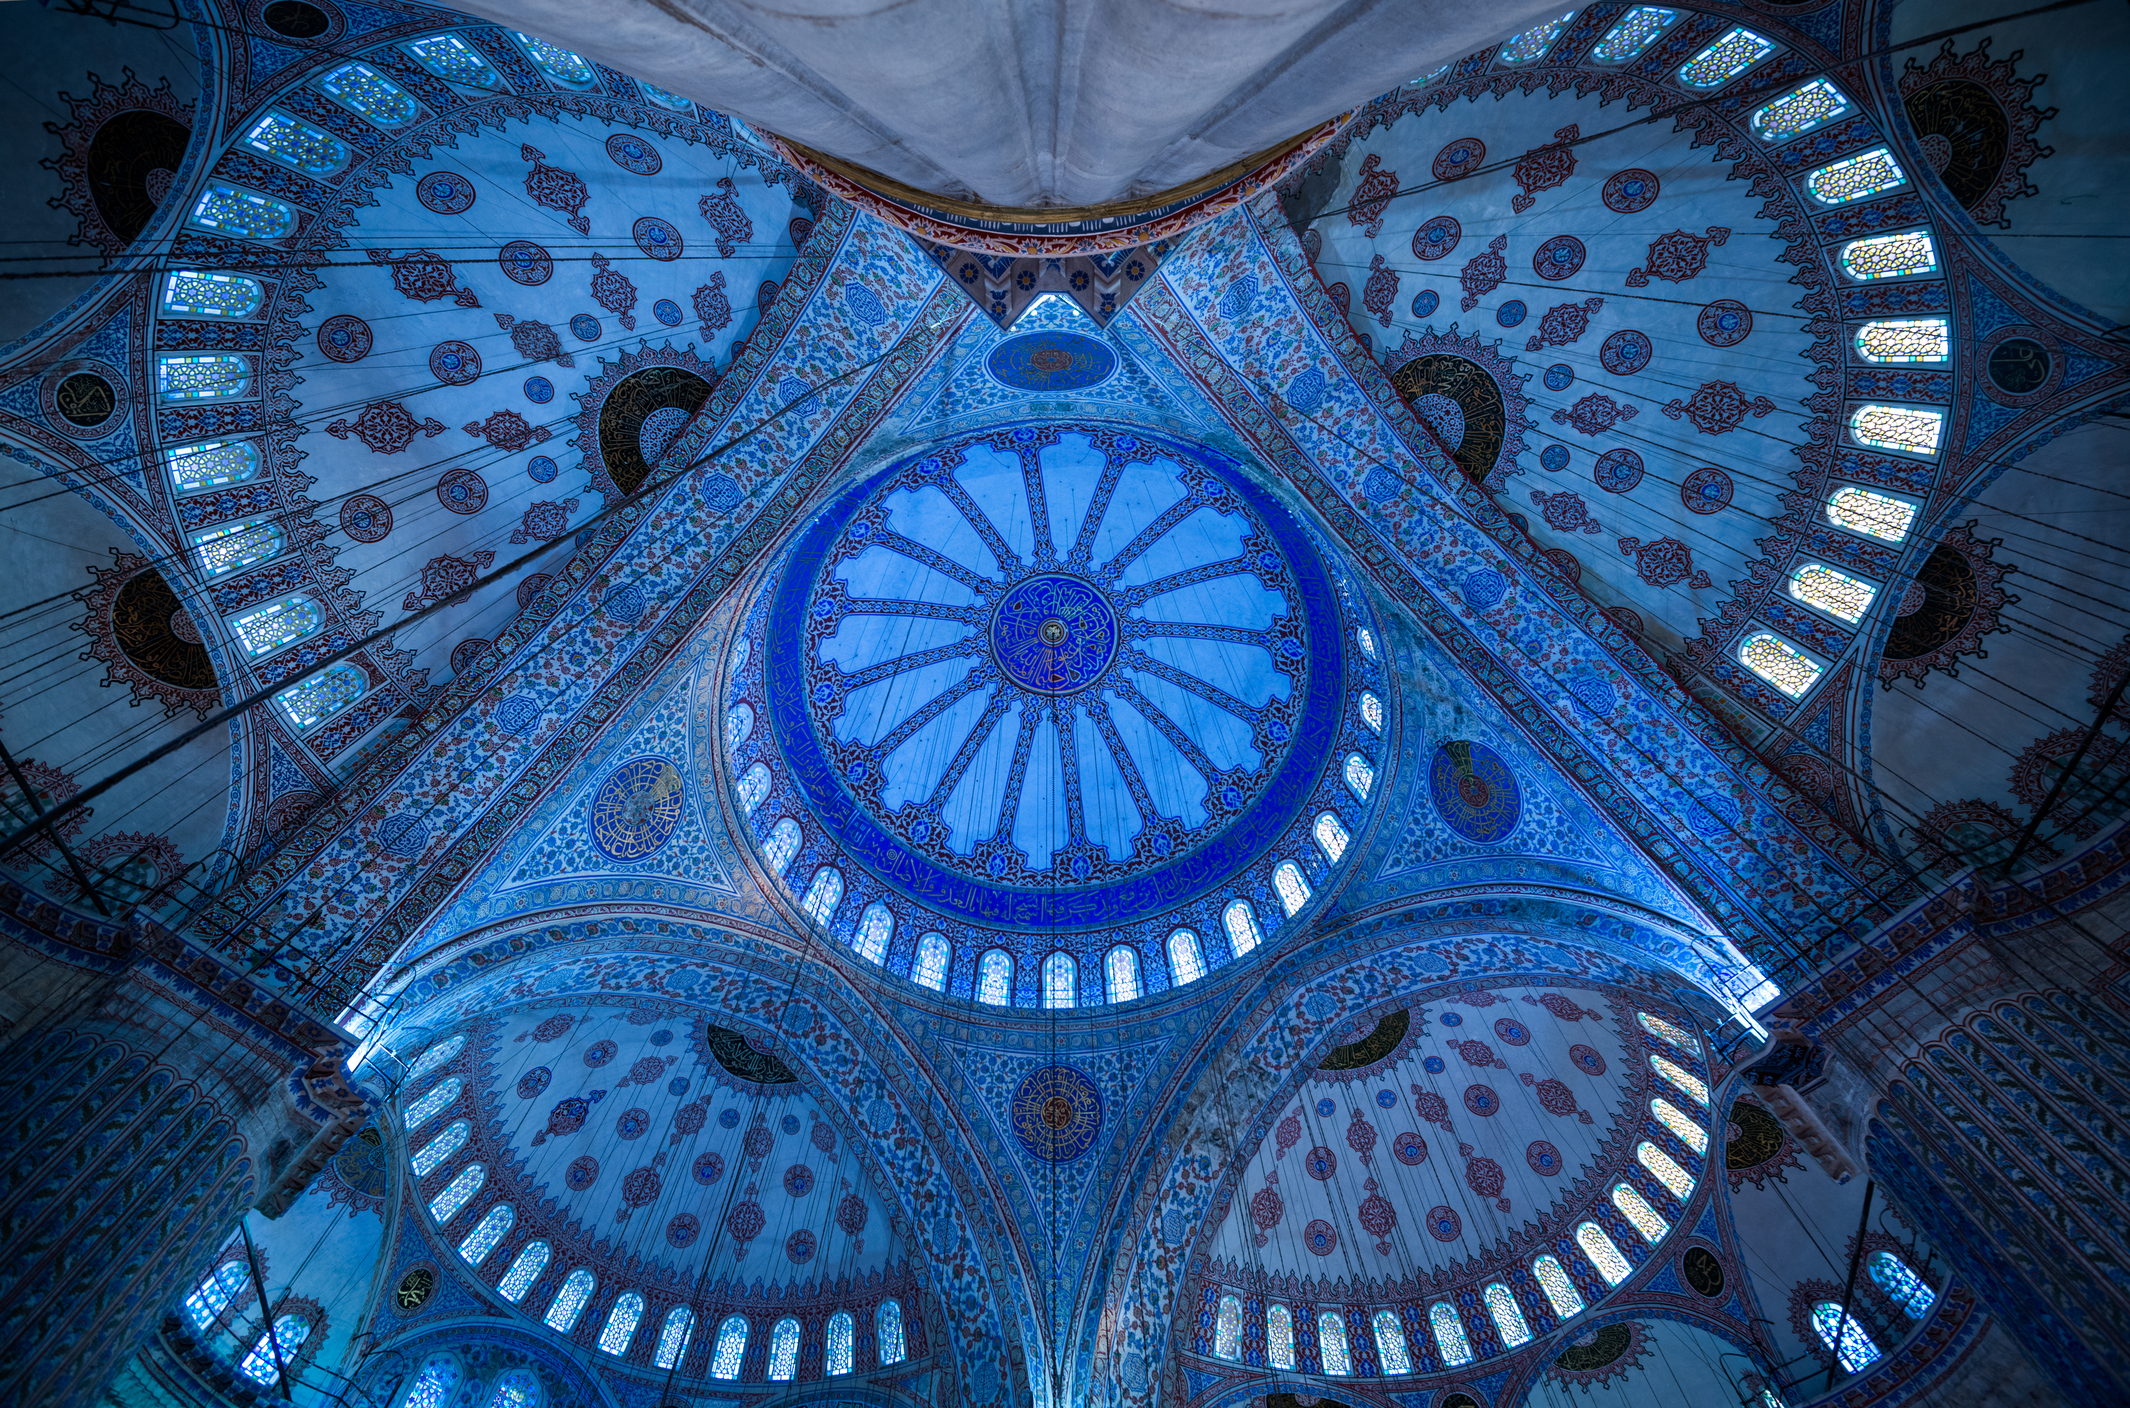 Interior of Sultanahmet in Istanbu